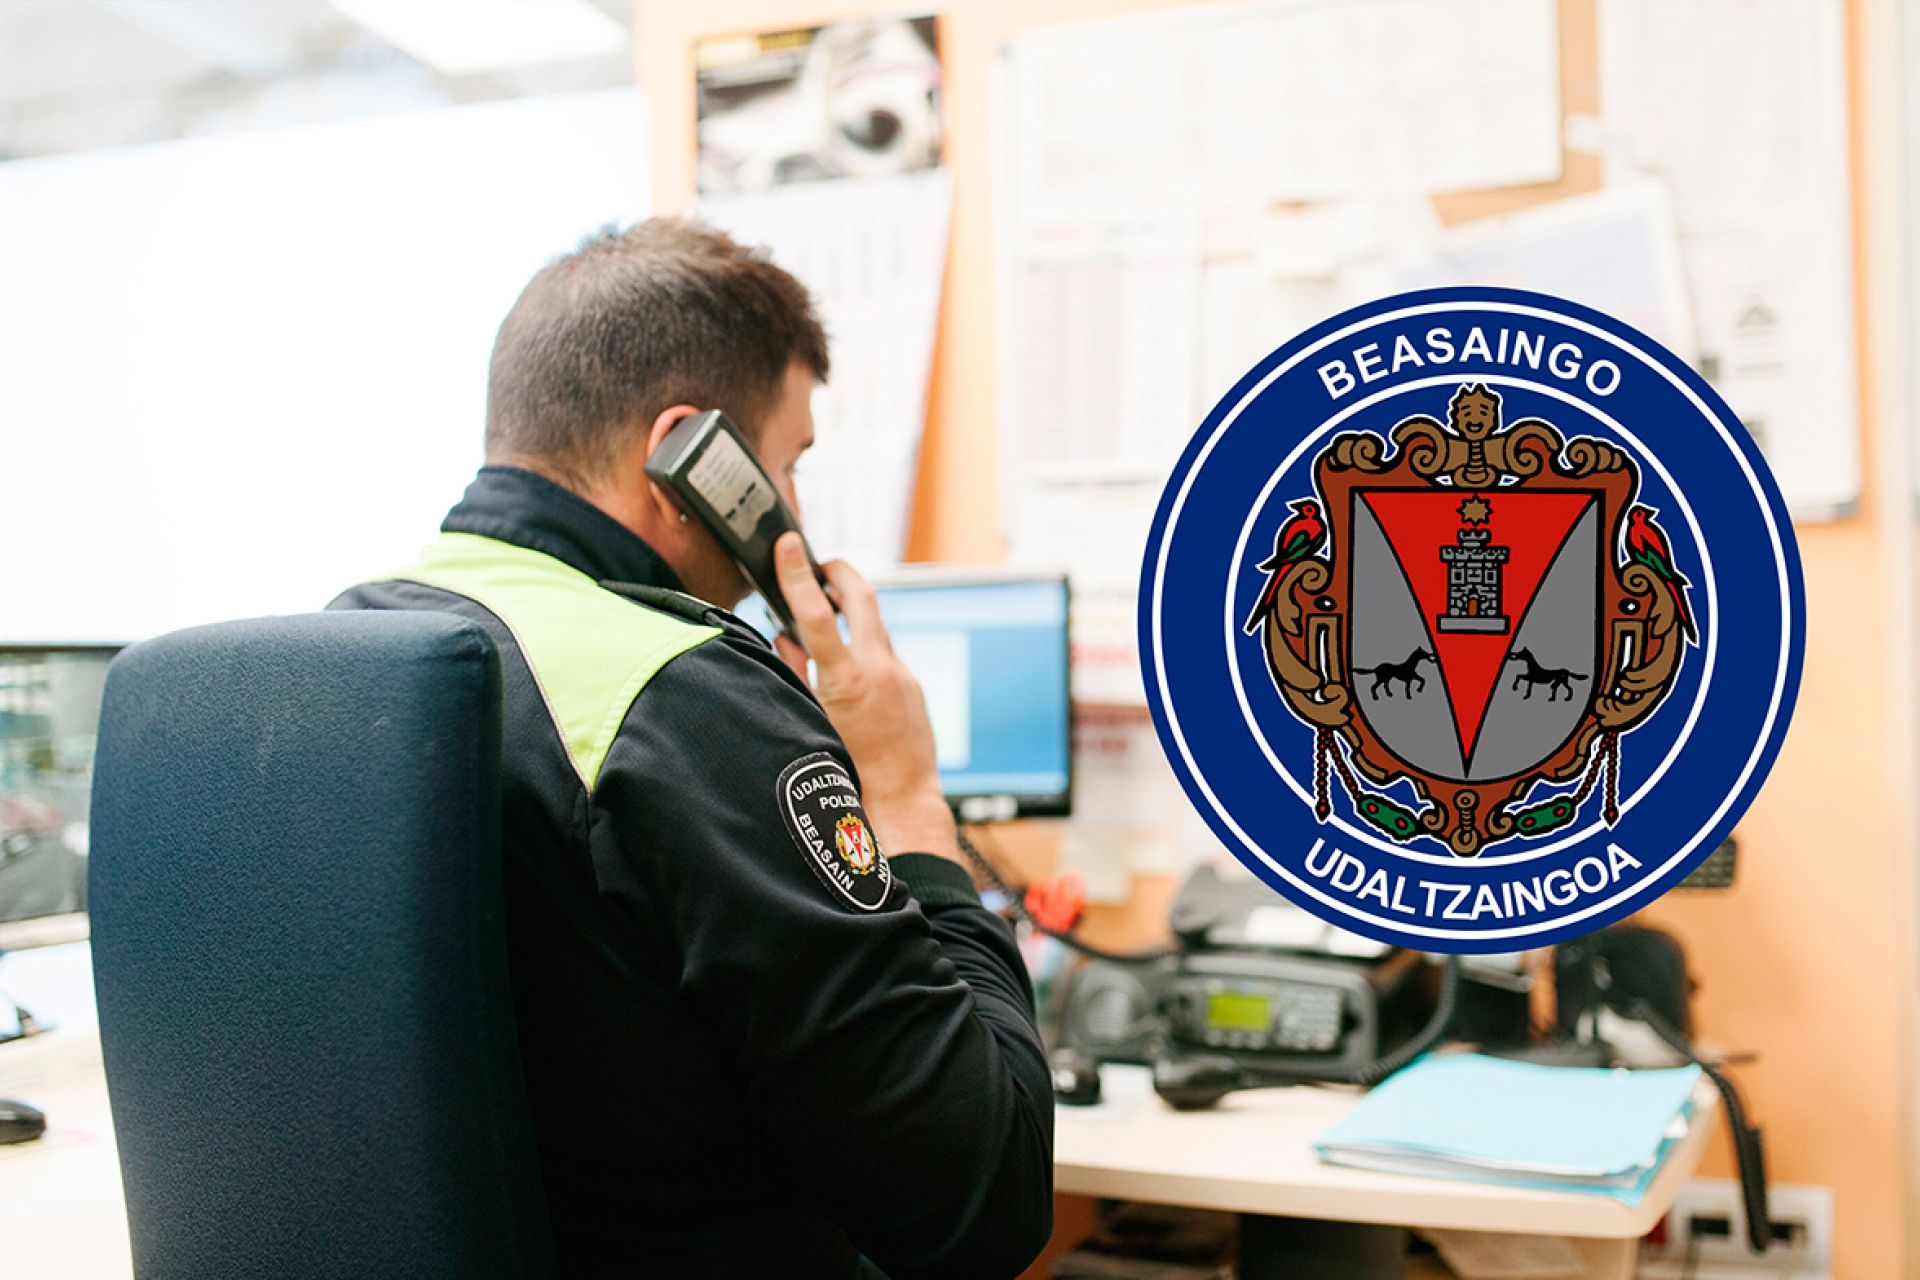 Avisos de la policía municipal en torno a la prevención sobre robos y objetos explosivos en las Loinatz jaiak